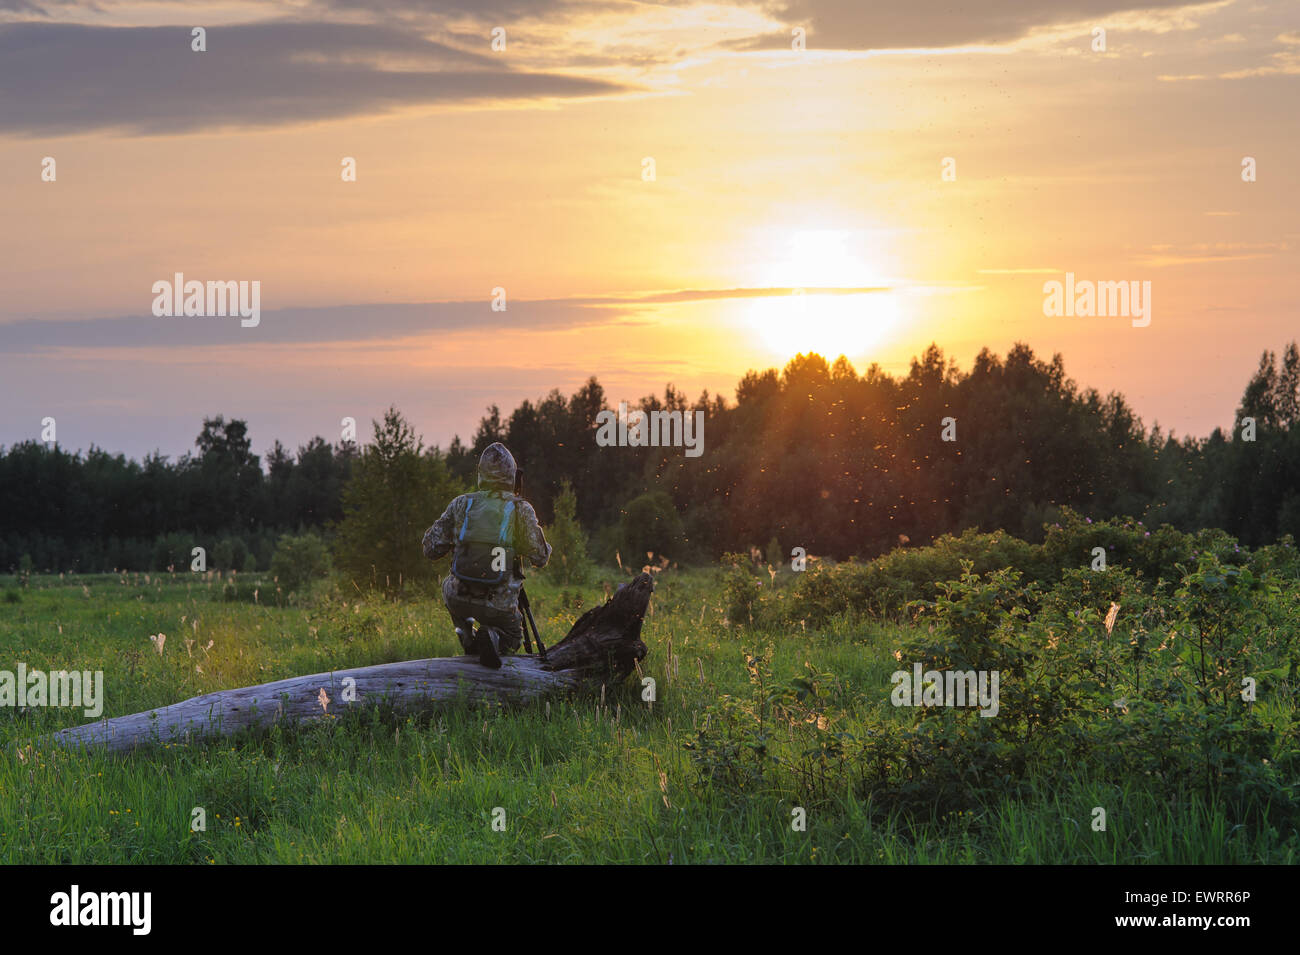 Photographe professionnel photographie le paysage au coucher du soleil Banque D'Images